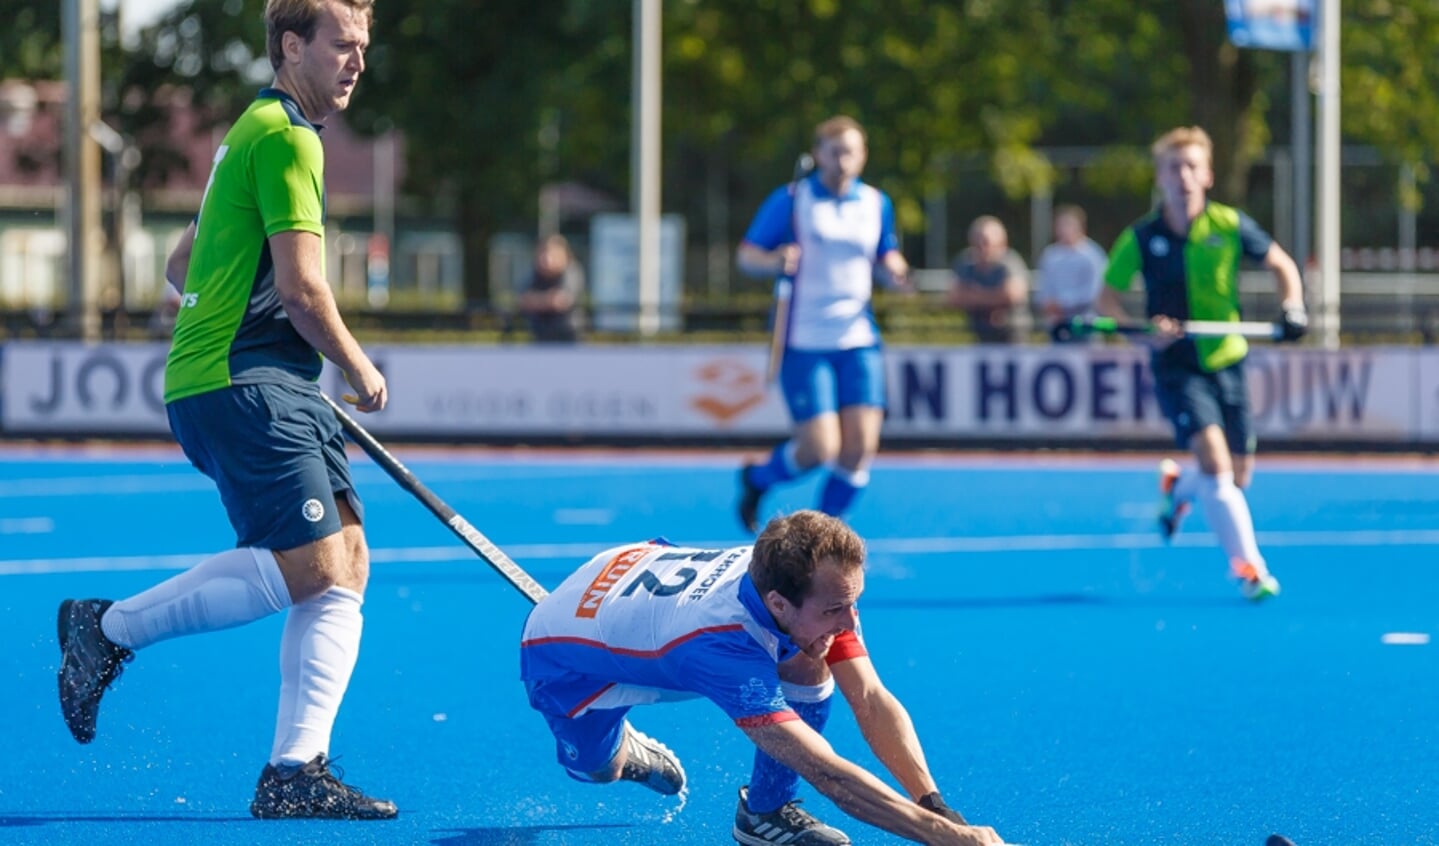  Zwolle-captain Matthijs Verhoef